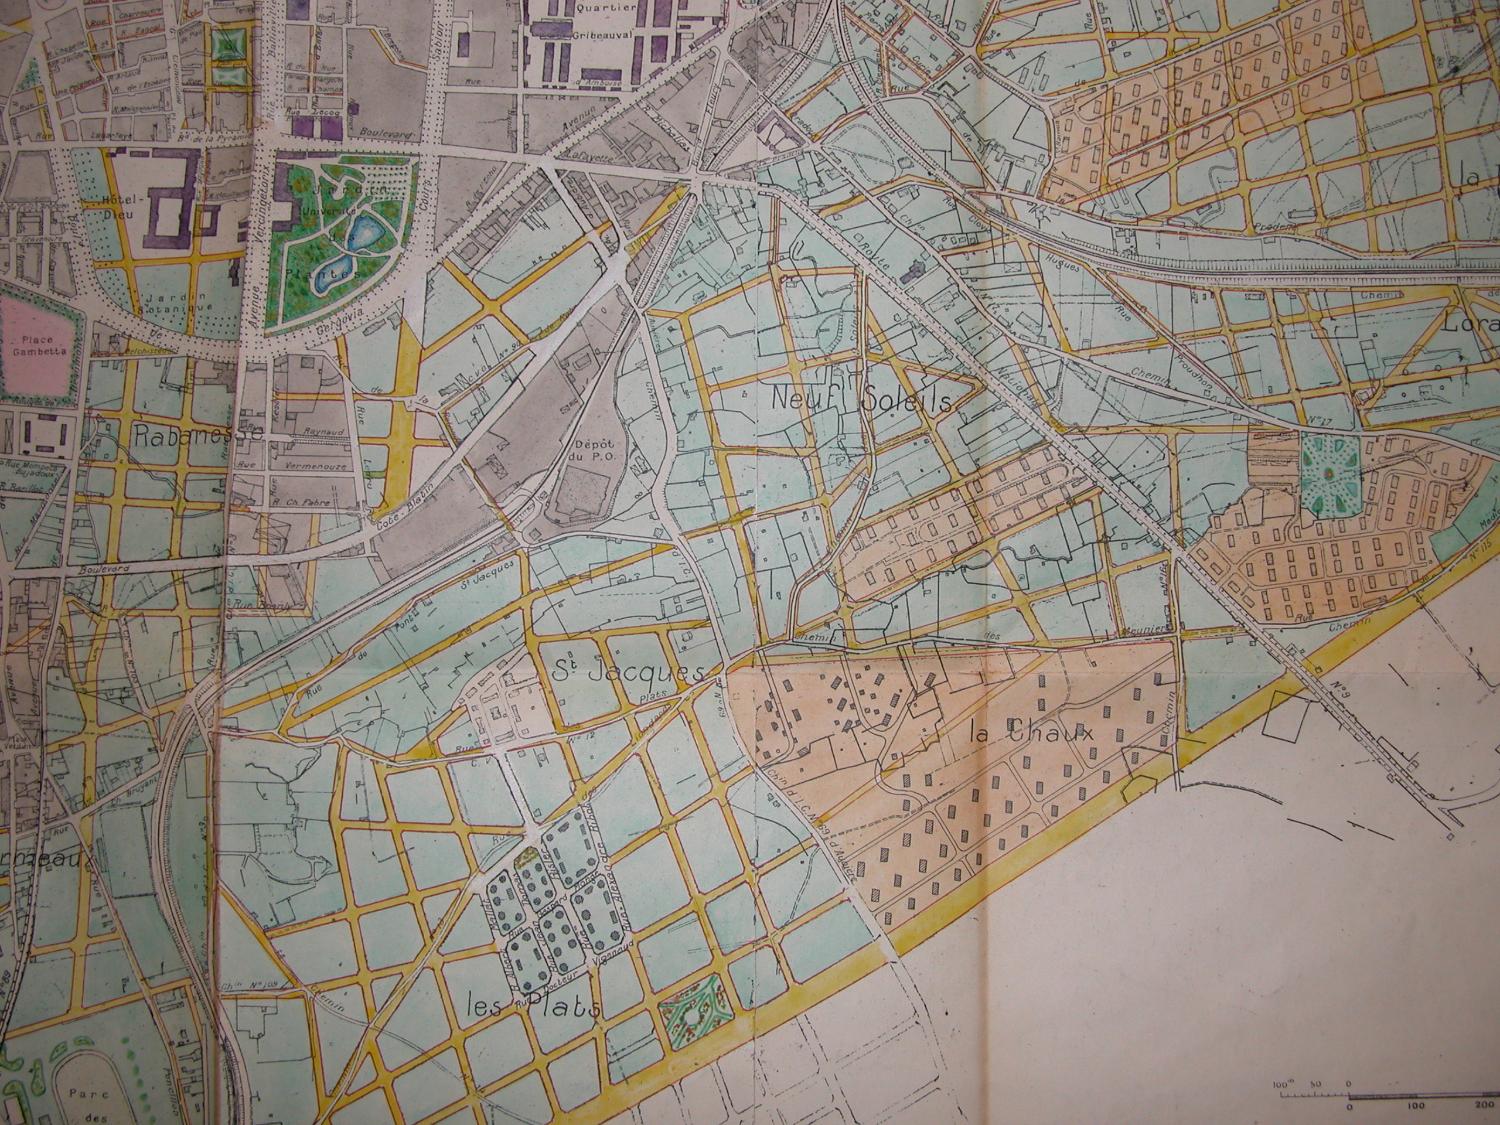 Ville de Clermont-Ferrand et ses abords. Projet d'extension. Par Morel, ingénieur, et le personnel technique municipal, 1925. Détail. La partie qui nous intéresse est située grosso modo dans l'angle en bas à gauche du cliché, entre la voie ferrée et le chemin d'Aubière (actuelle avenue Léon-Blum). Avec, en jaune, le réseau de voirie projeté (en partie réalisé). On remarquera les maisons clairsemées au nord (dont quelques HBM), le lotissement de HBM (les Plats) au centre. Ce dernier a été entièrement démoli et remplacé par la tranche III du Secteur industrialisé. L'îlot dévolu à un square a été réalisé sur sa moitié sud, longeant le boulevard Louis-Loucheur (en 1974, sur cette moitié d'îlot Georges Bovet prévoit square et parking). (Photo chercheure.)